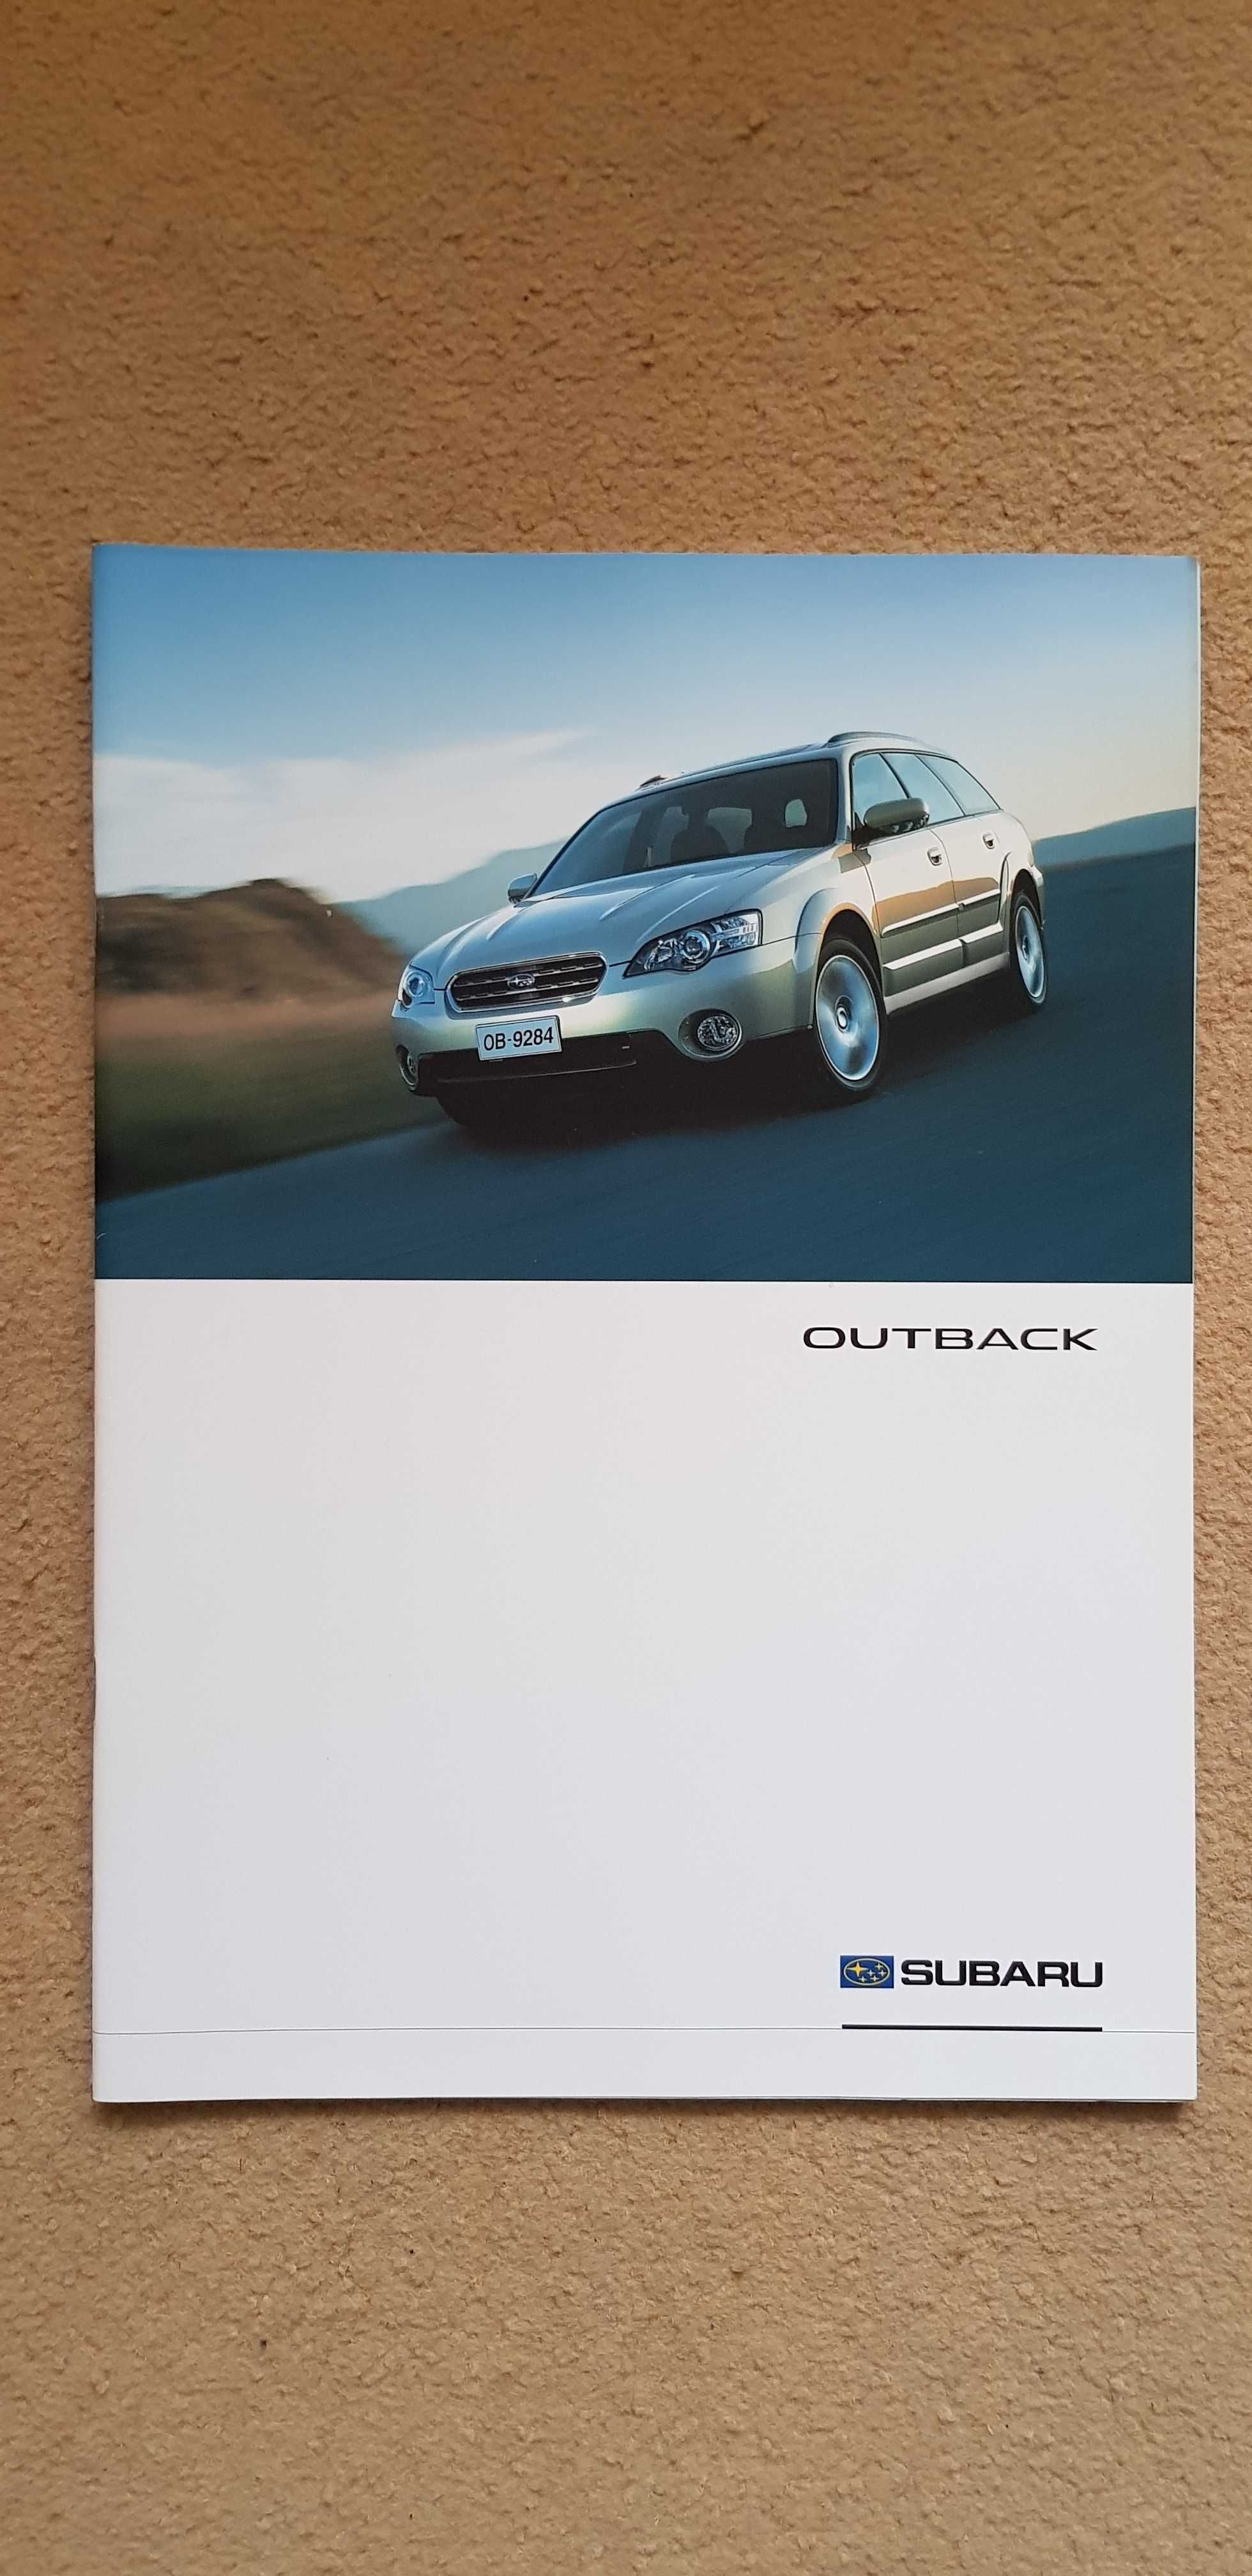 Prospekt Subaru Outback 2004r.